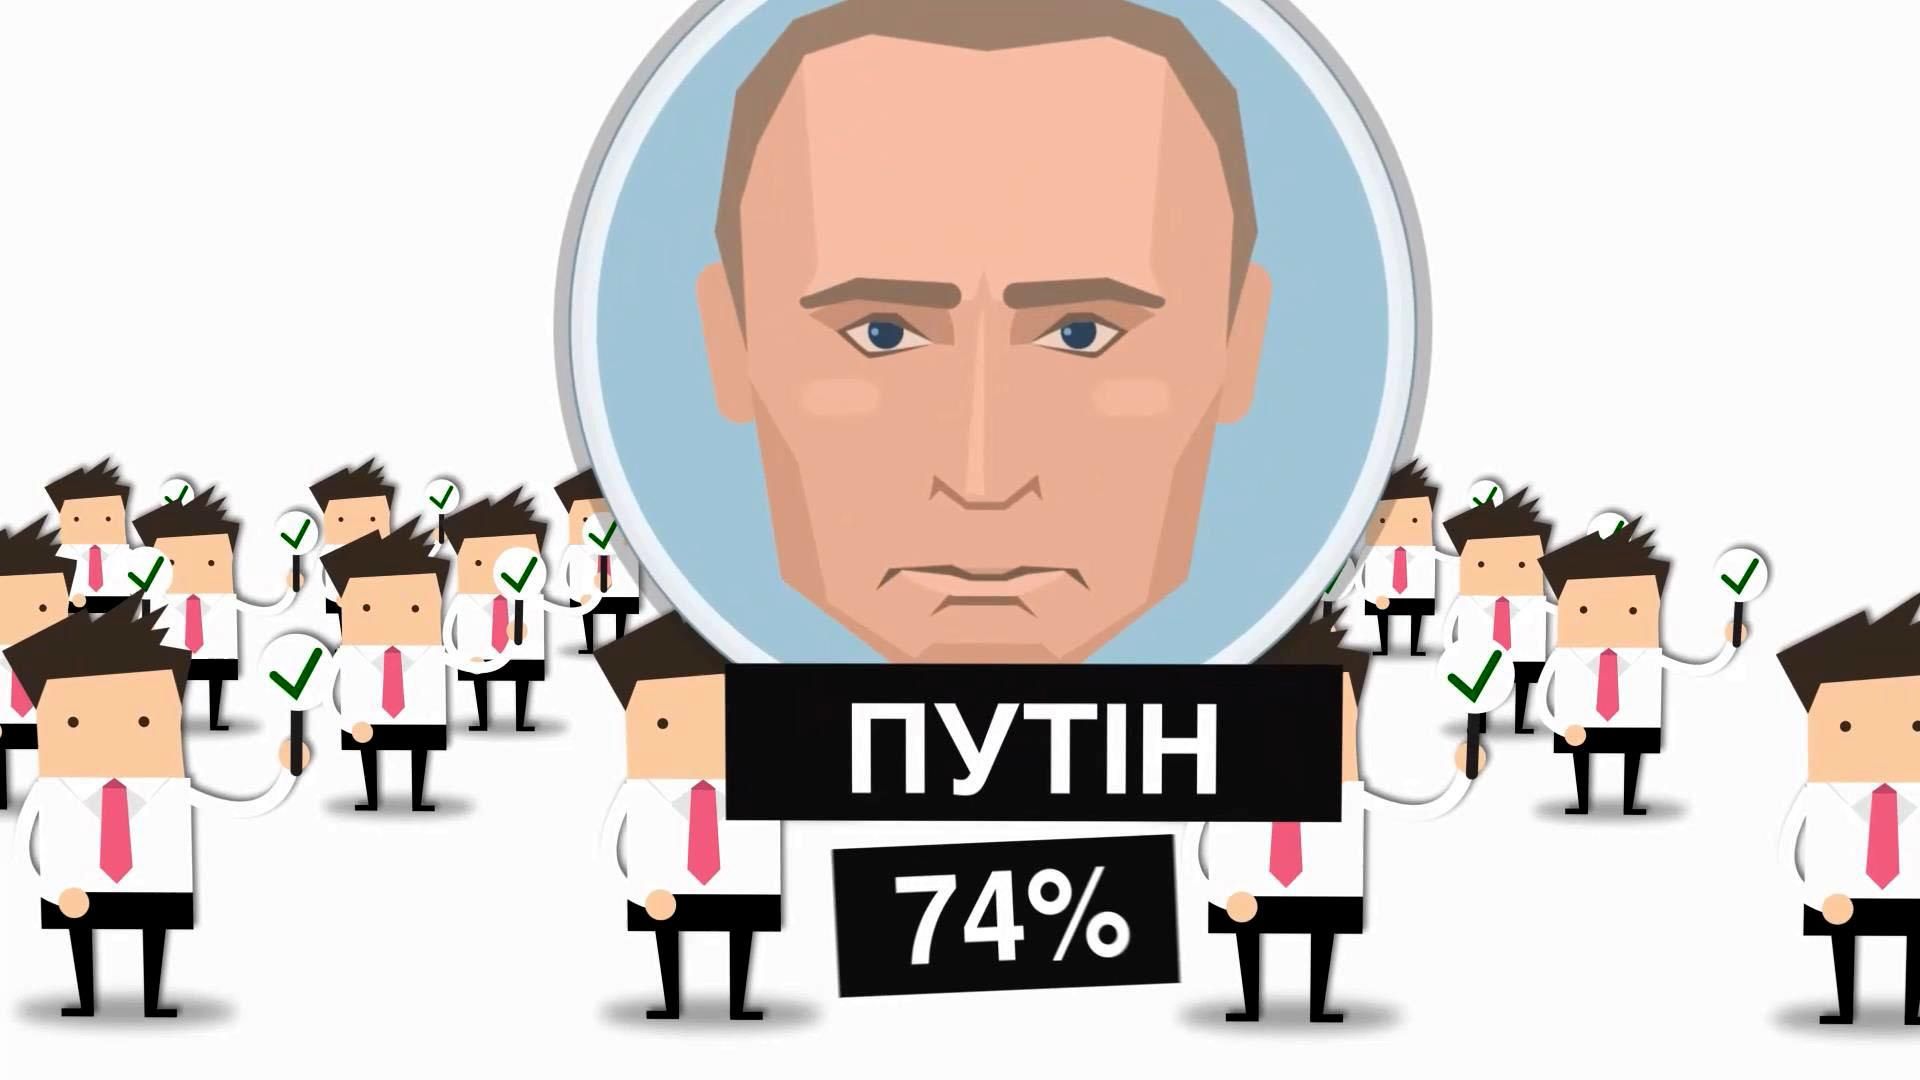 Скільки росіян готові віддати голос за Путіна на майбутніх виборах